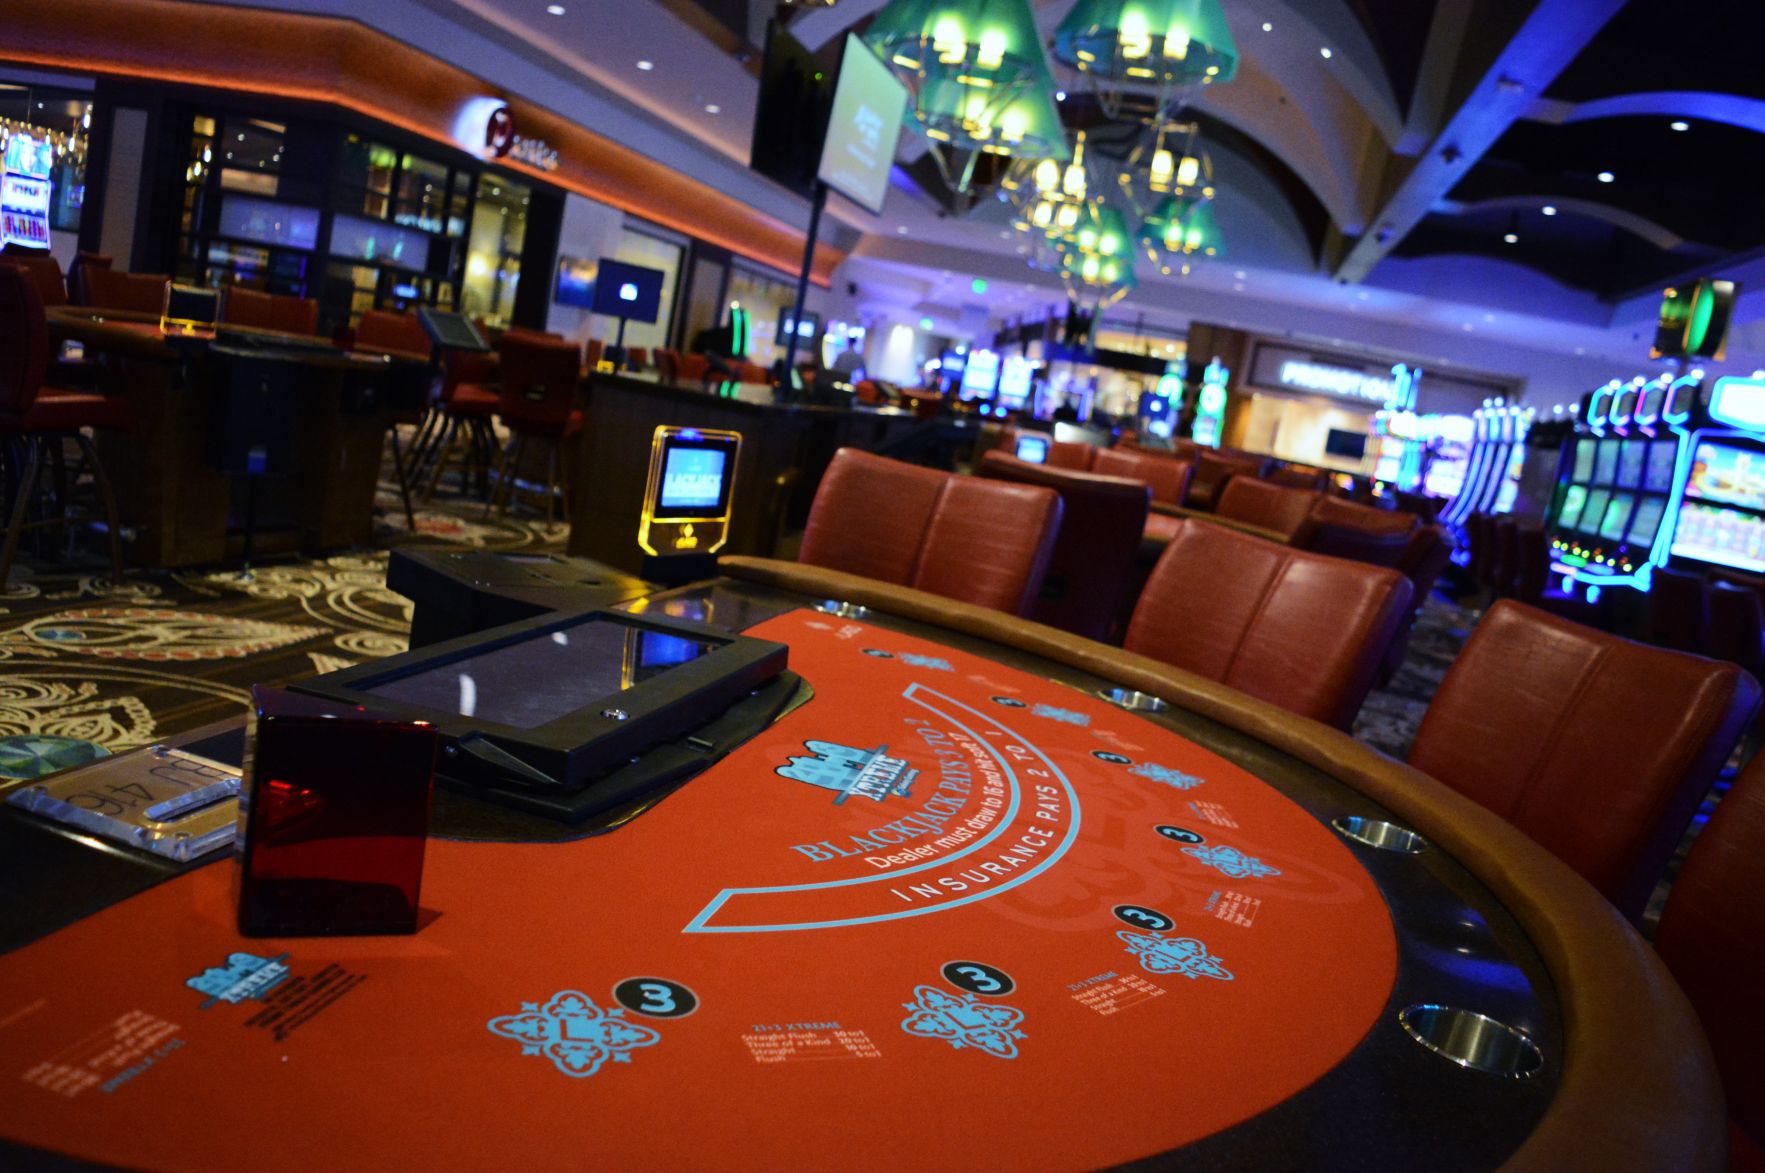 del lago resort and casino events